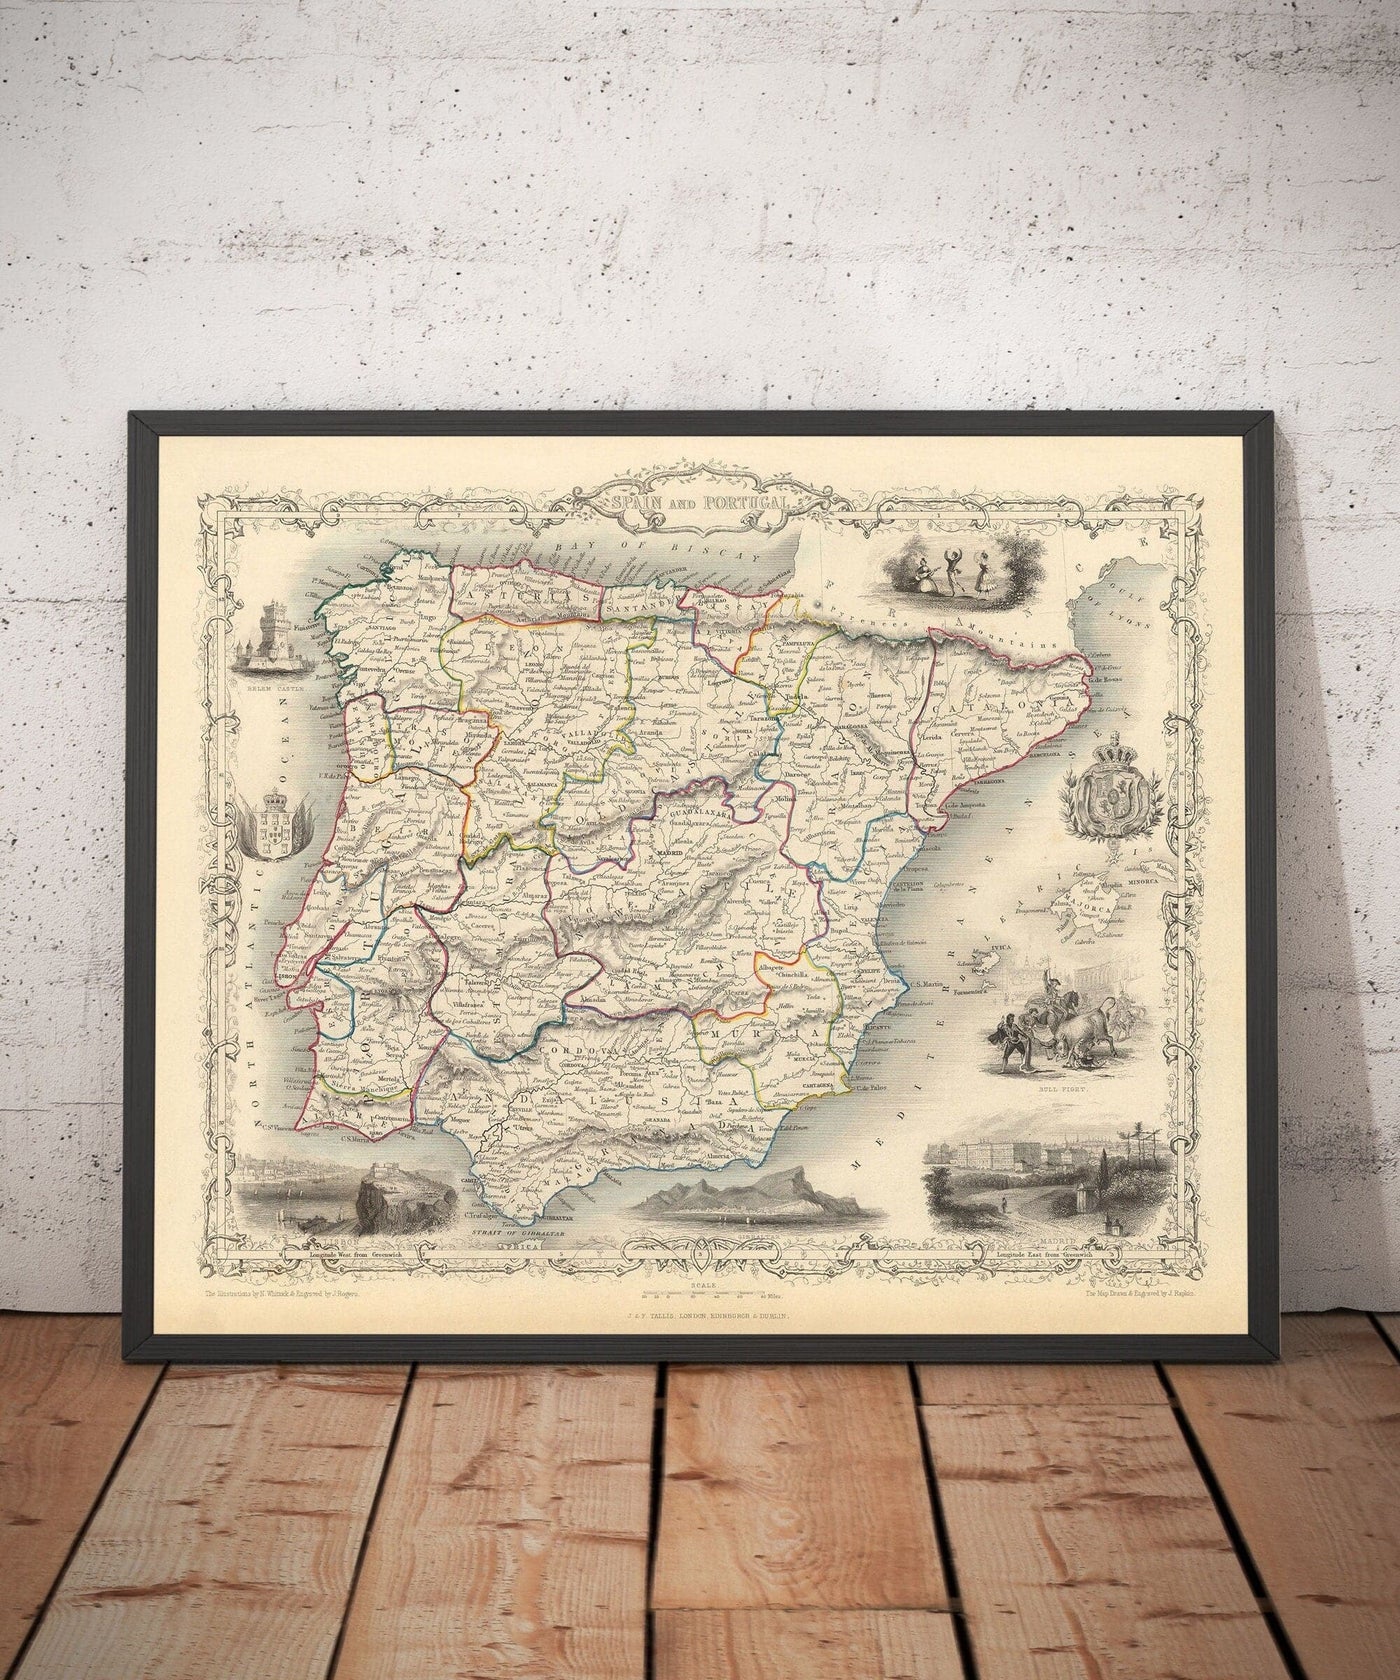 Alte Karte von Spanien & Portugal, 1851 - viktorianische Illustrationen - Katalonien, Madrid, Lissabon, Gibraltar, Andalusien